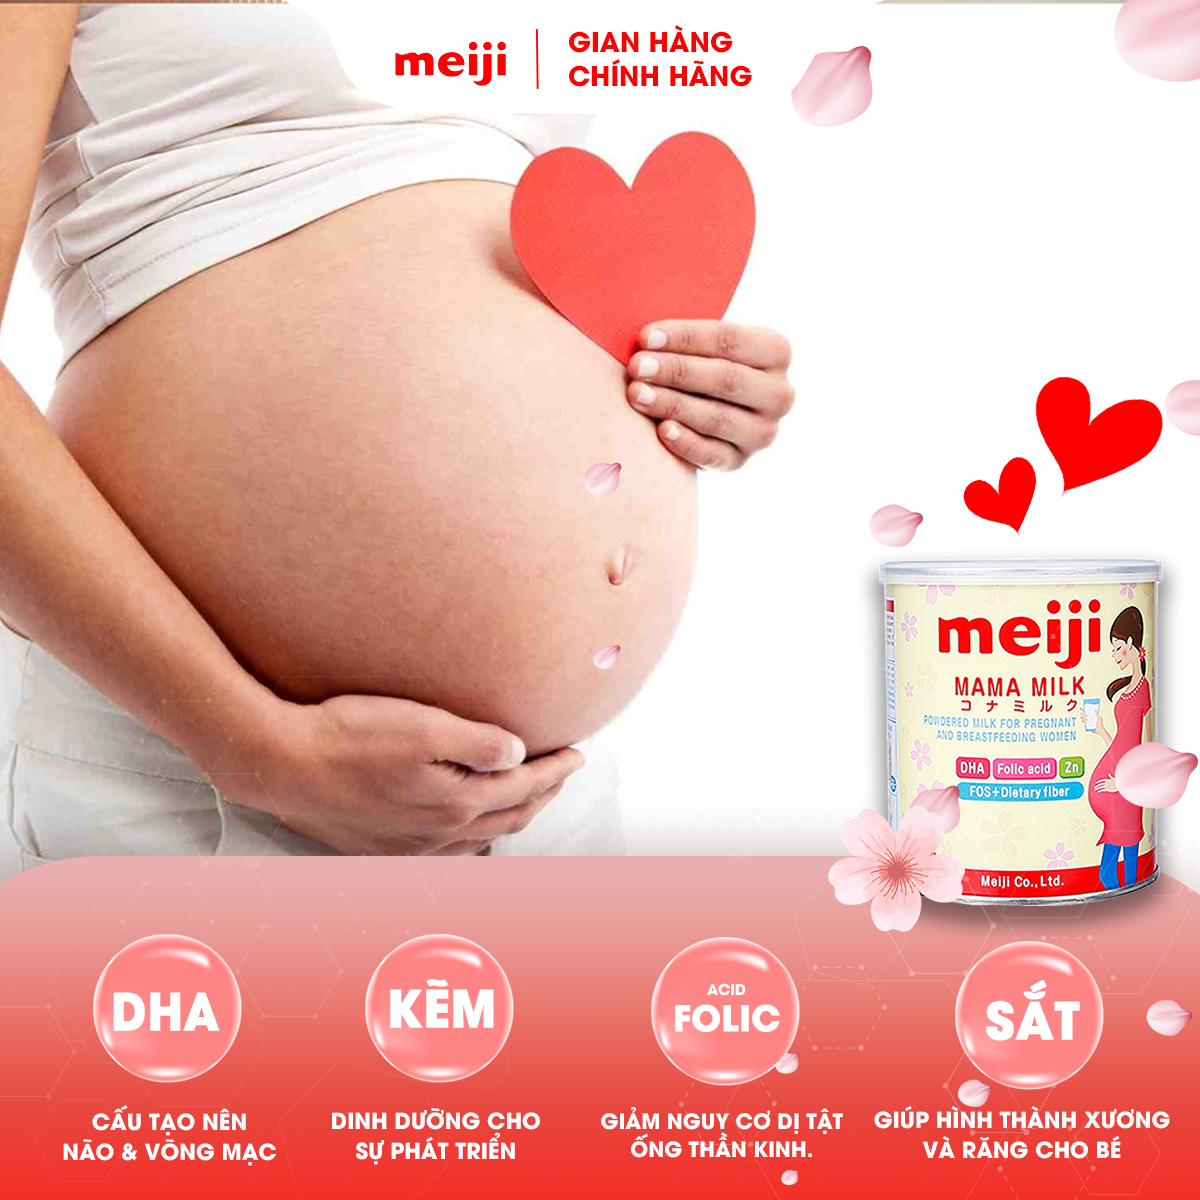 Thực Phẩm Bổ Sung Meiji Mama Milk - Nhập khẩu chính hãng (350g)